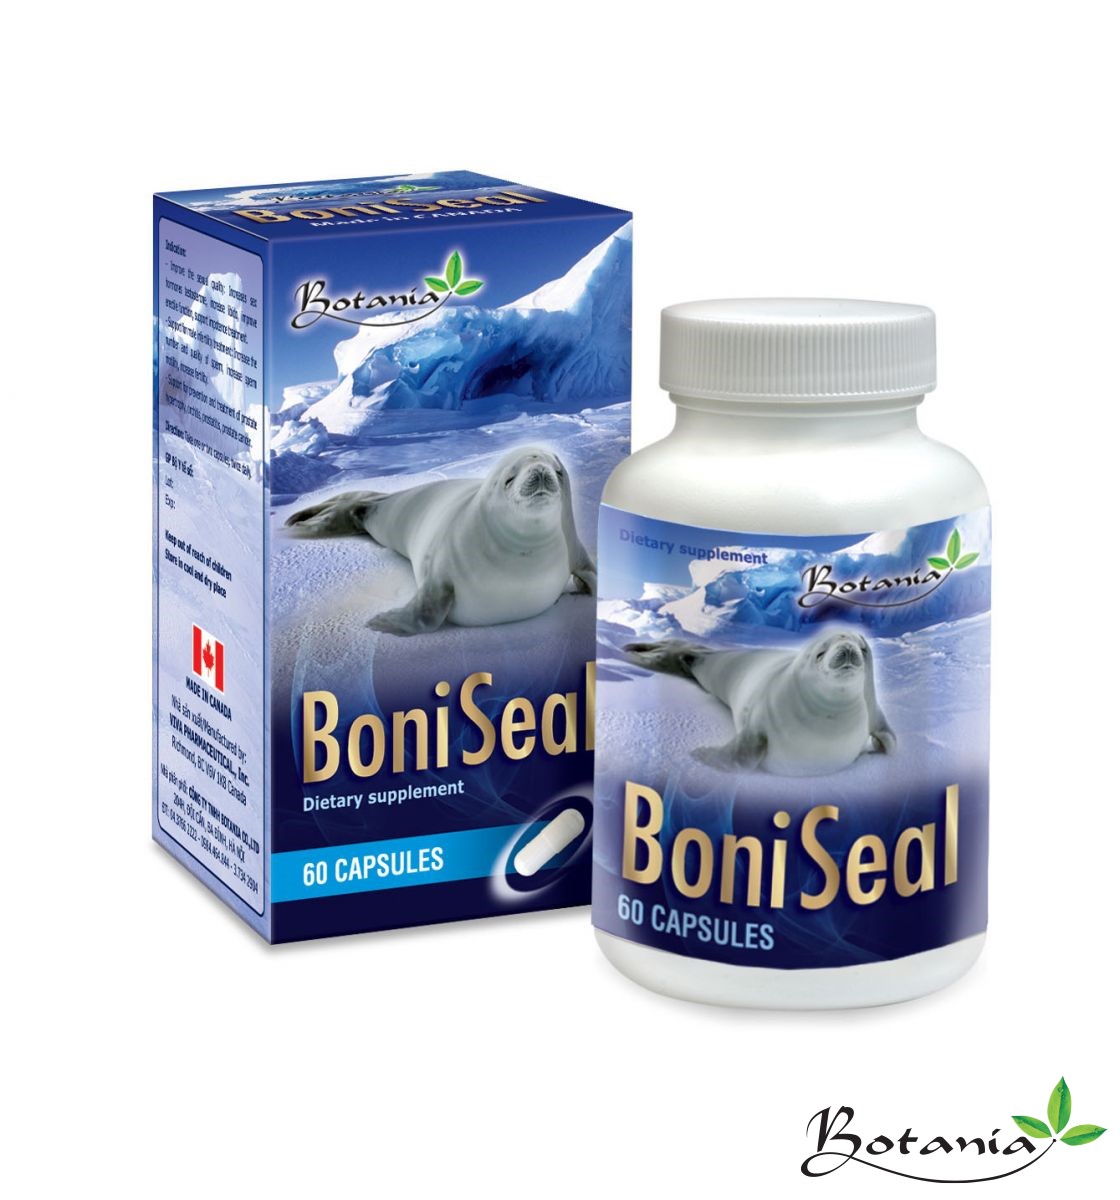 Thực phẩm bảo vệ sức khỏe BoniSeal + hỗ trợ bổ thận, kích thích cơ thể tăng tiết testosterol, tăng cường sinh lực nam, nâng cao sức khỏe 